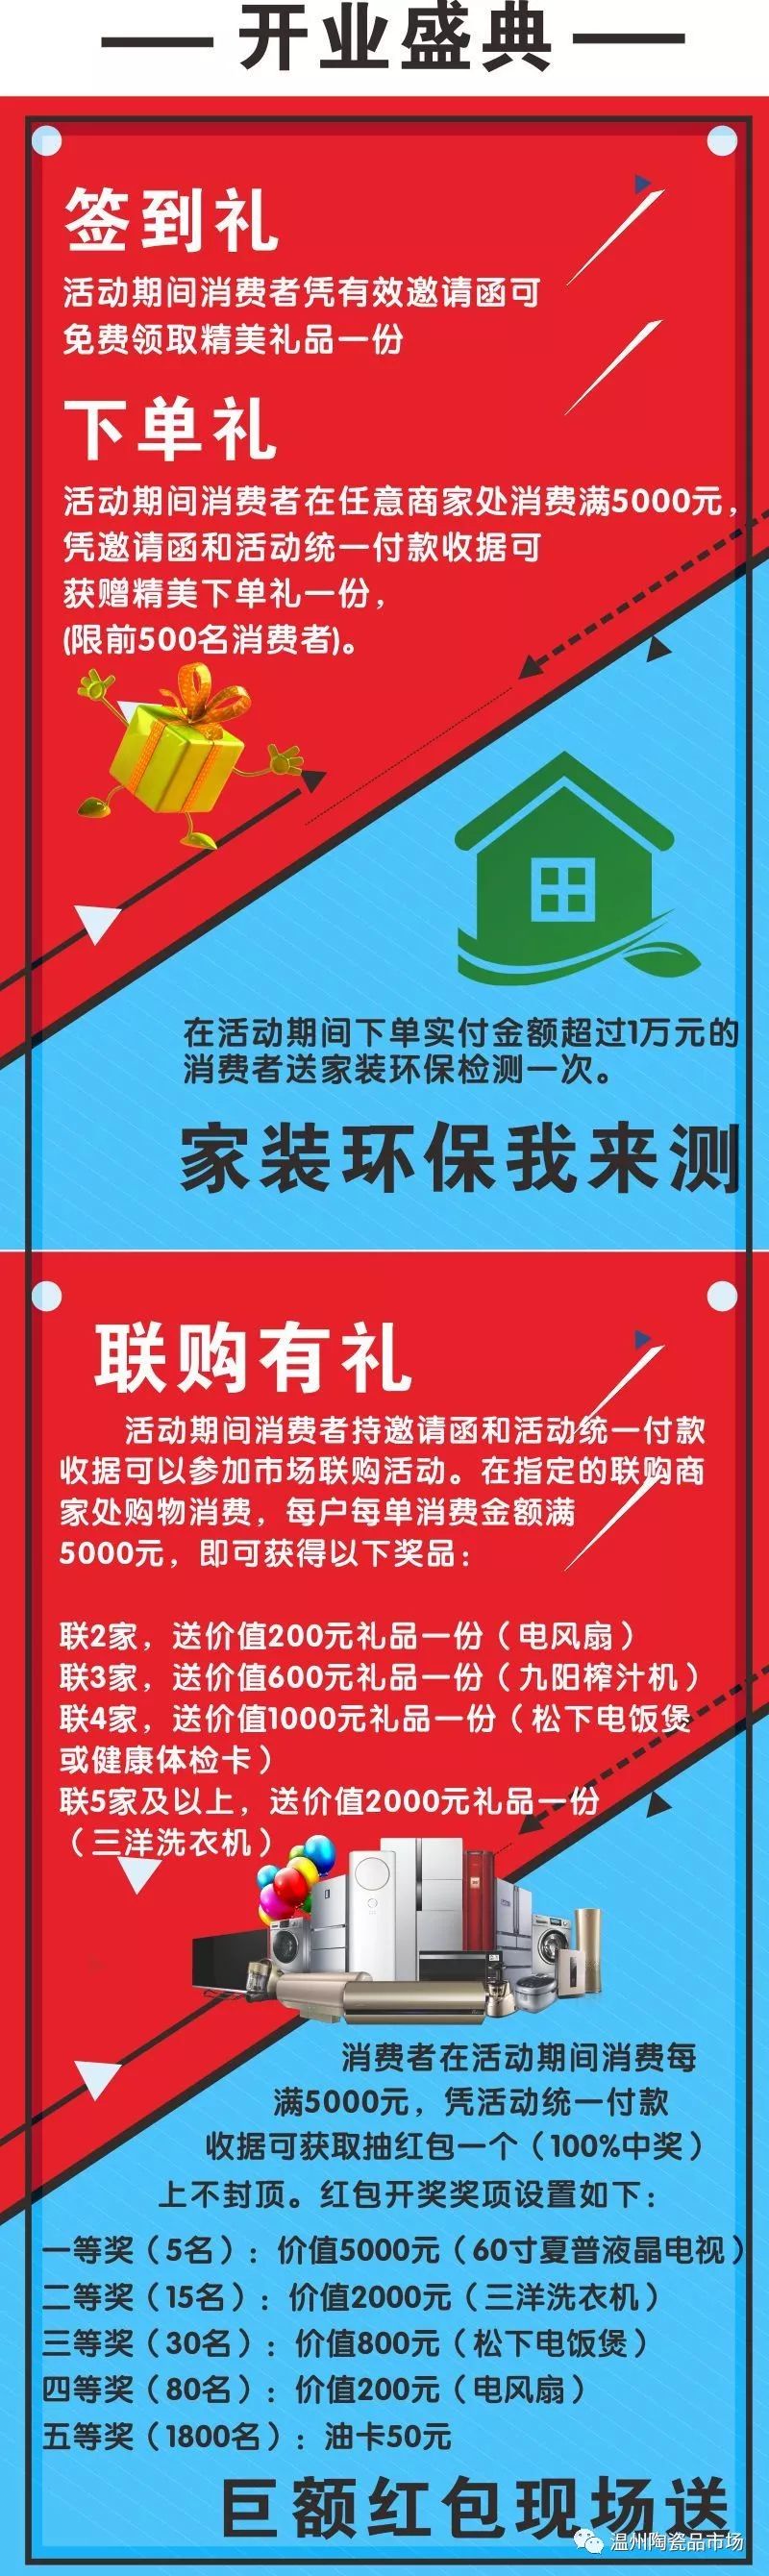 温州陶瓷品市场20周年庆典暨新商城盛大开业